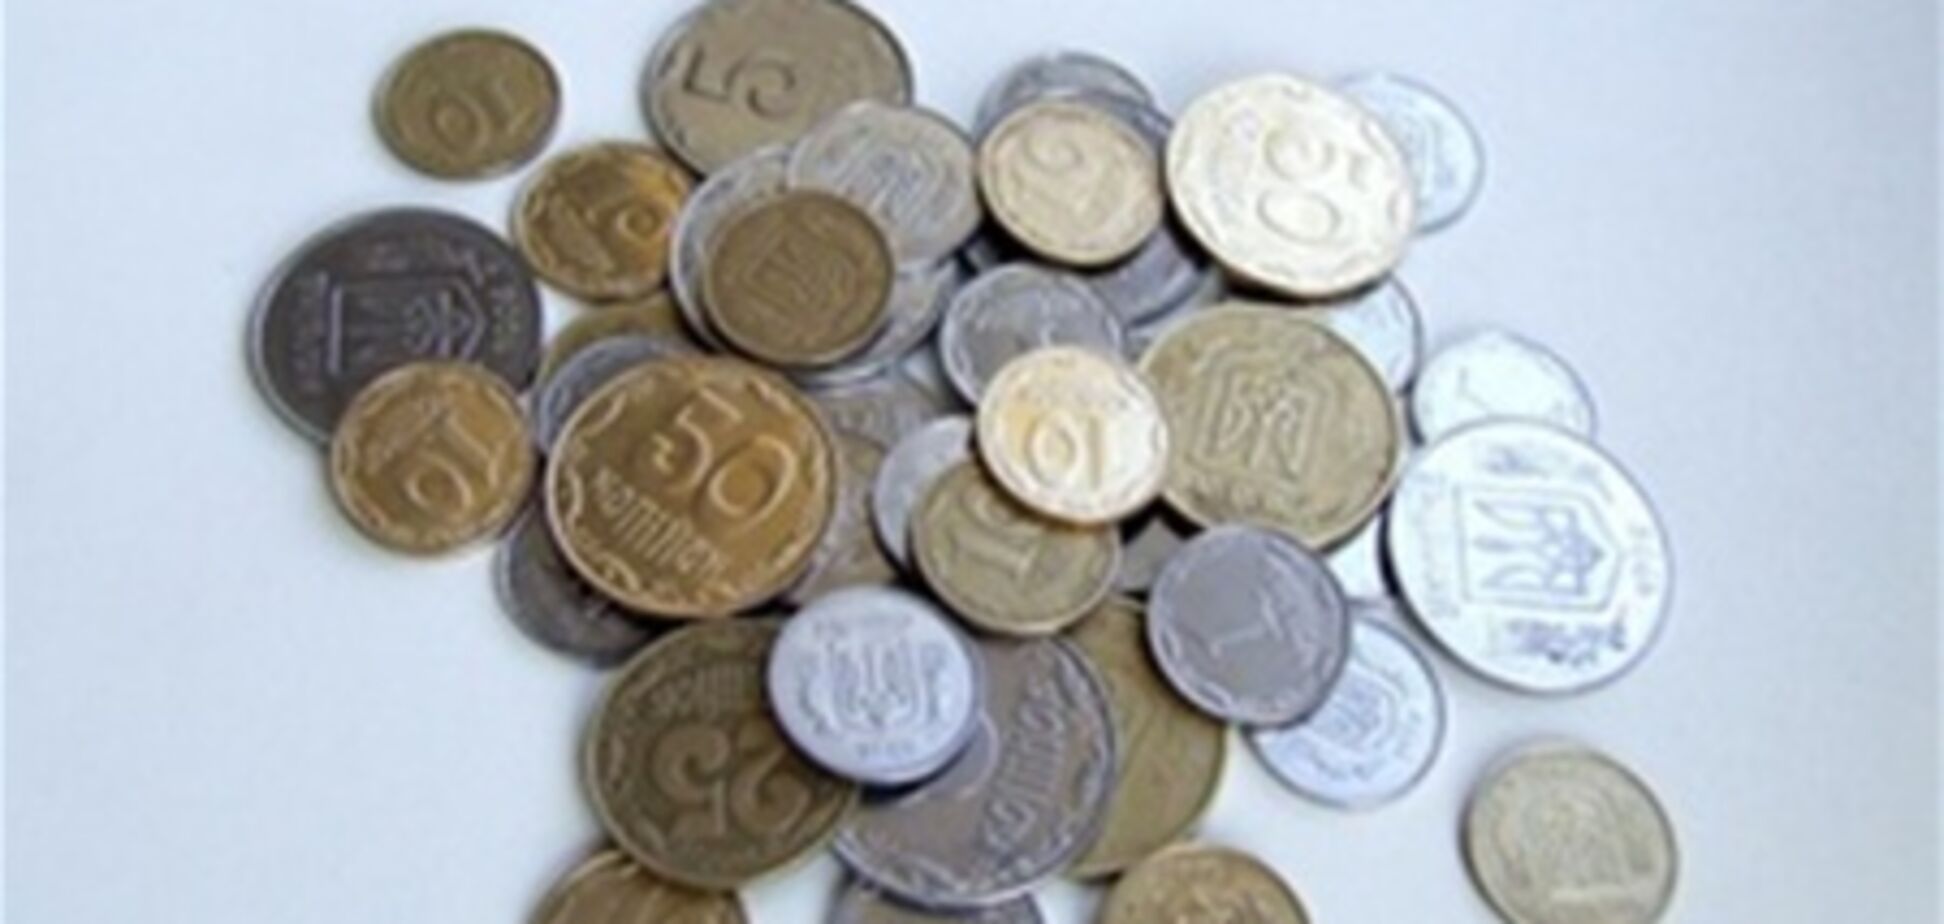 НБУ: банки должны ужесточить оборот разменных монет